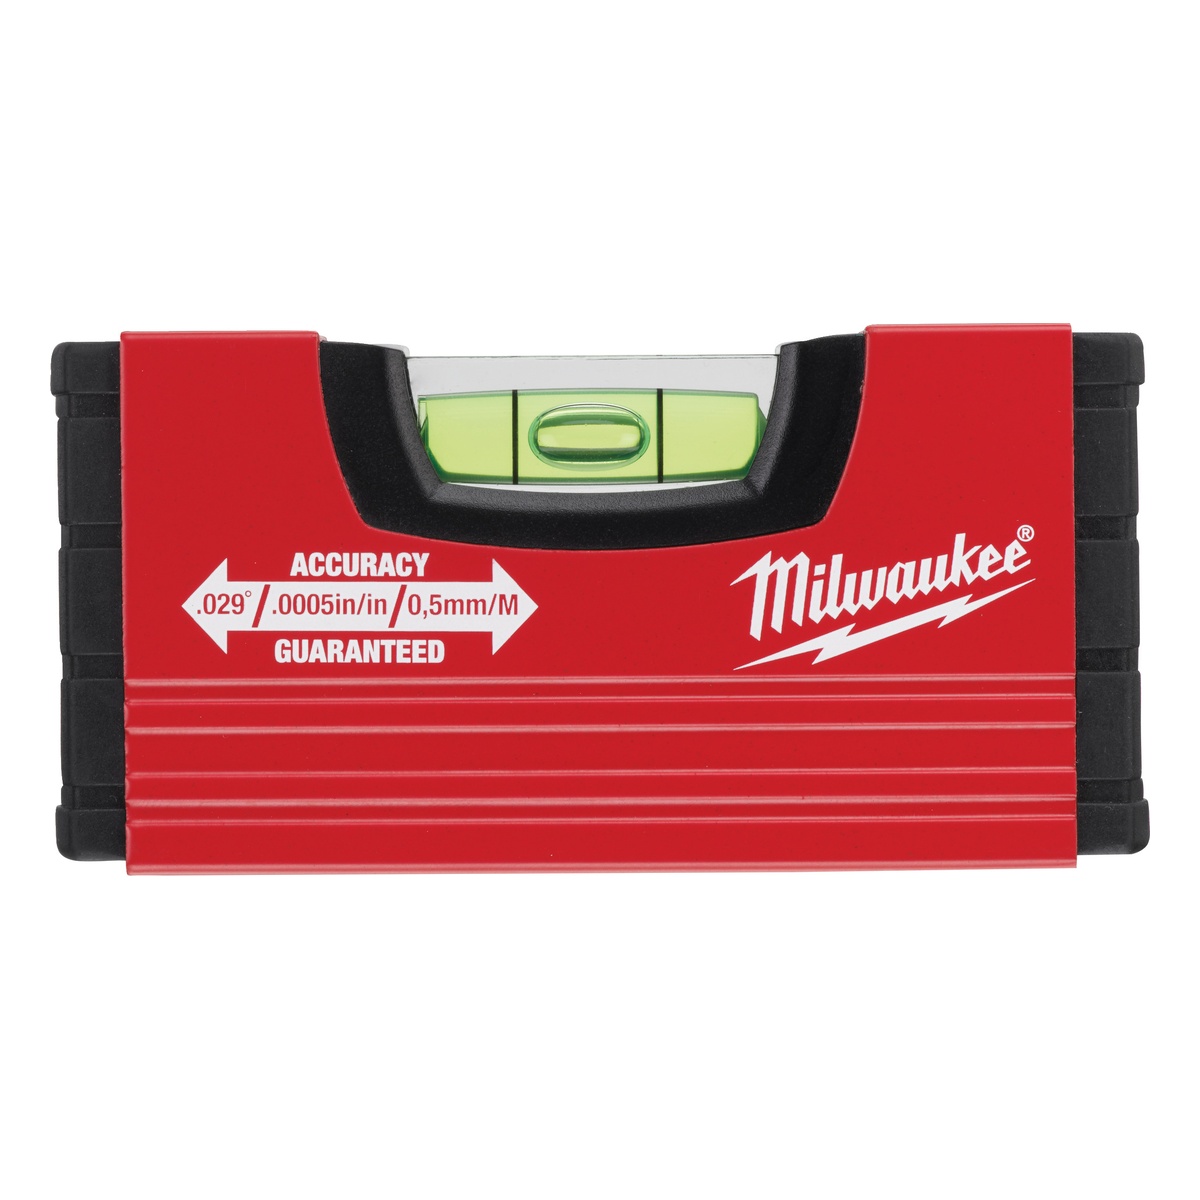 Milwaukee 10 cm lang Wasserwaage Minibox - 1 Stk.